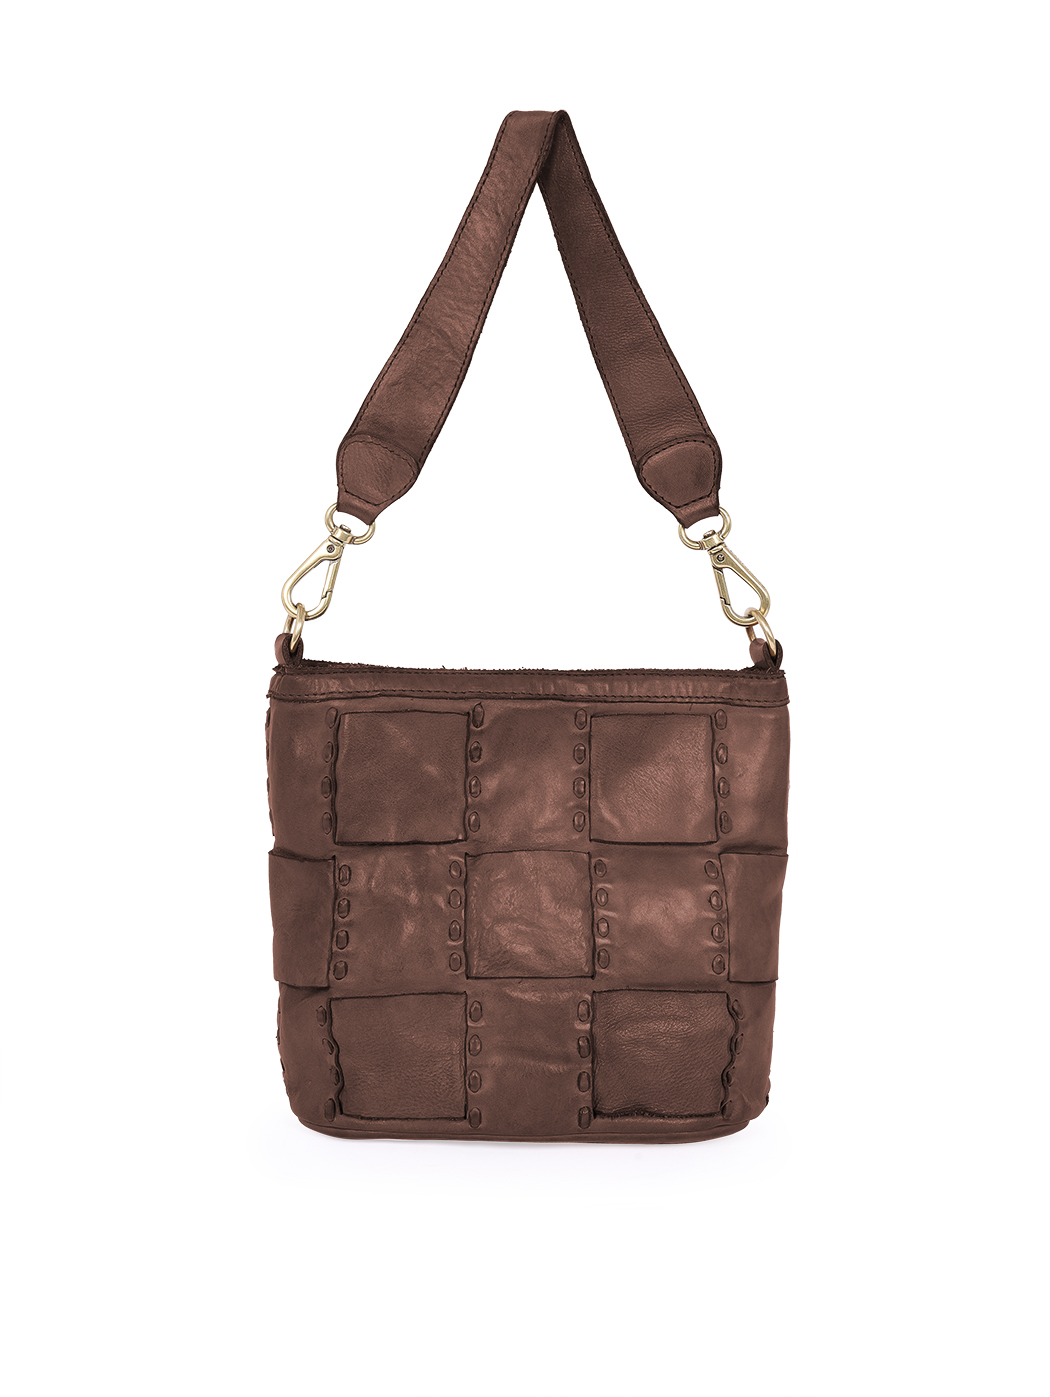 Плетеная сумка темно - коричневого цвета